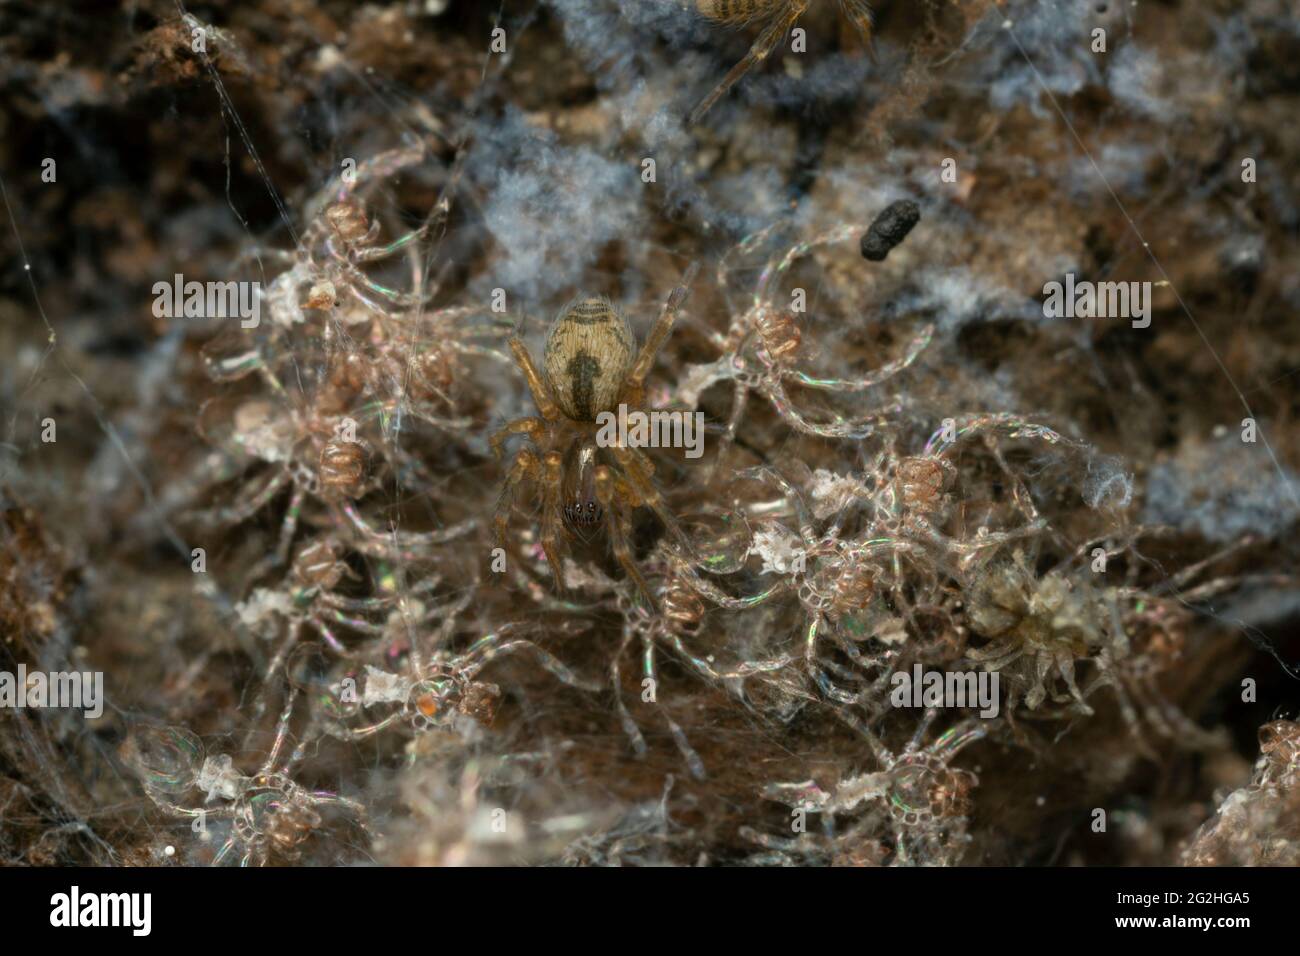 Araignée de fenêtre juvénile, Amaurobius fenestralis en nid Banque D'Images